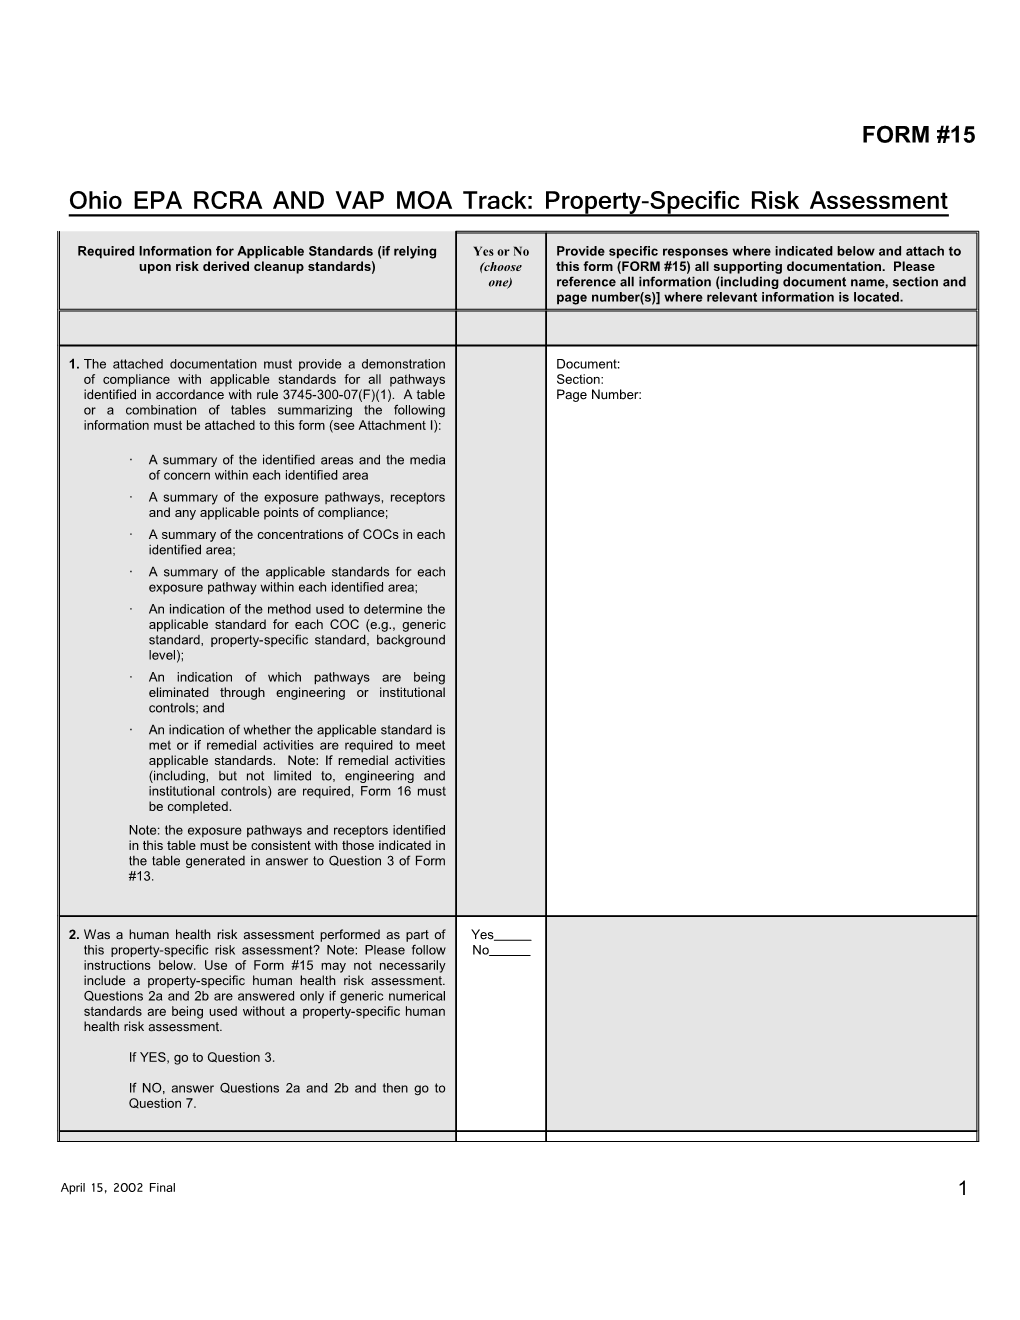 Ohio EPA VAP MOA Track: Property-Specific Risk Assessment